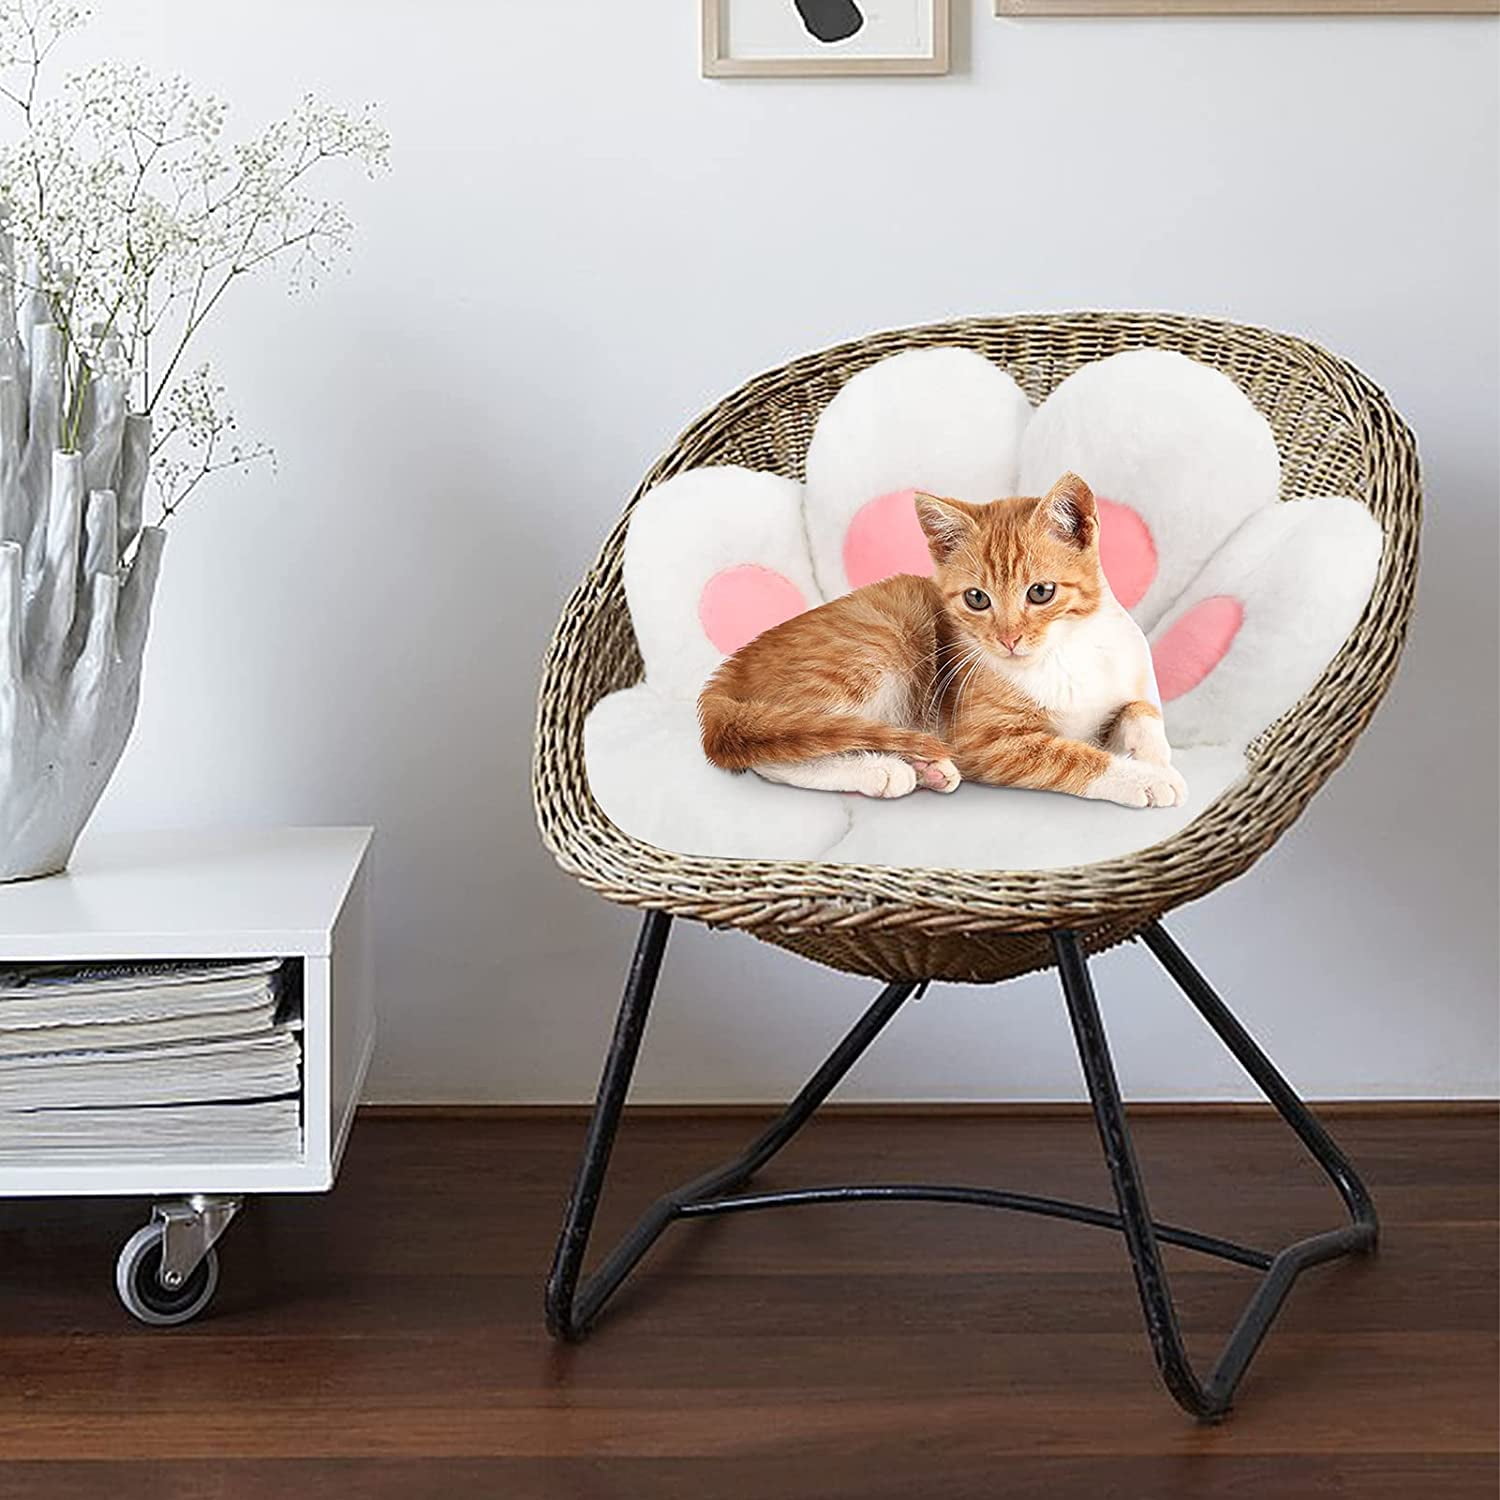 Cushion Paw Cat Seat Kawaii Sofa Cute Lazy Pillow Chair Comfy